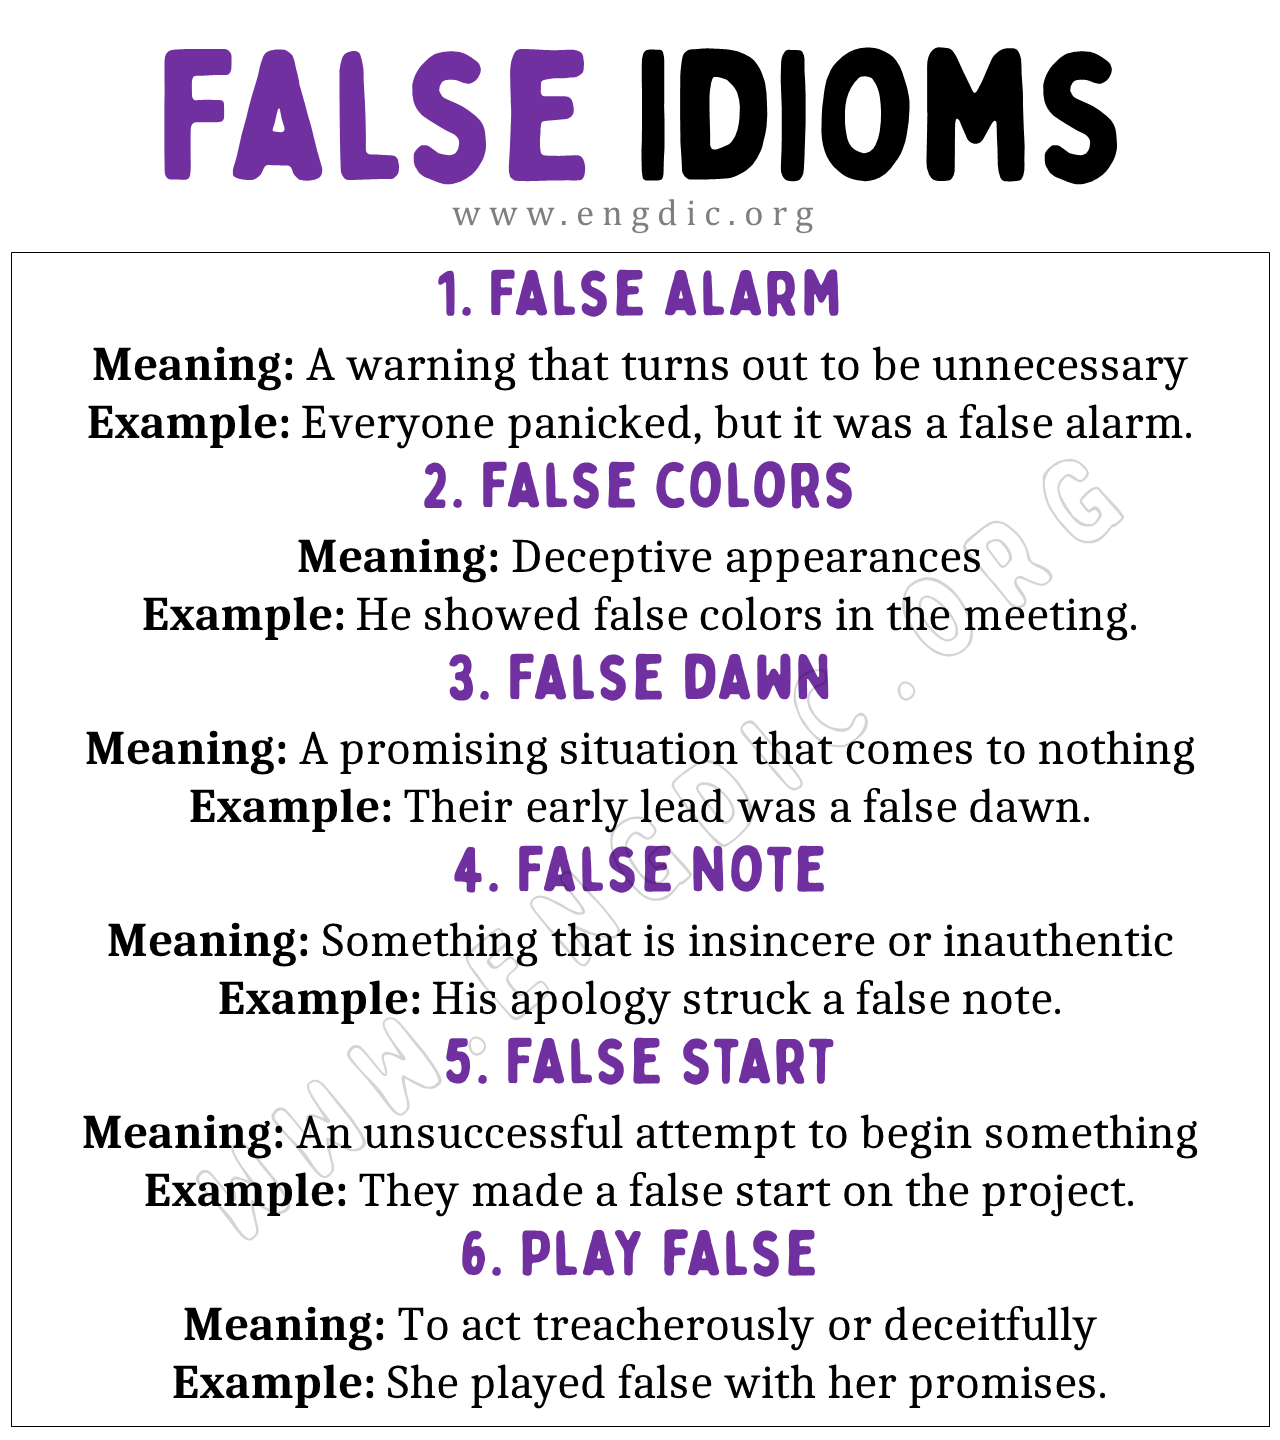 False Idioms